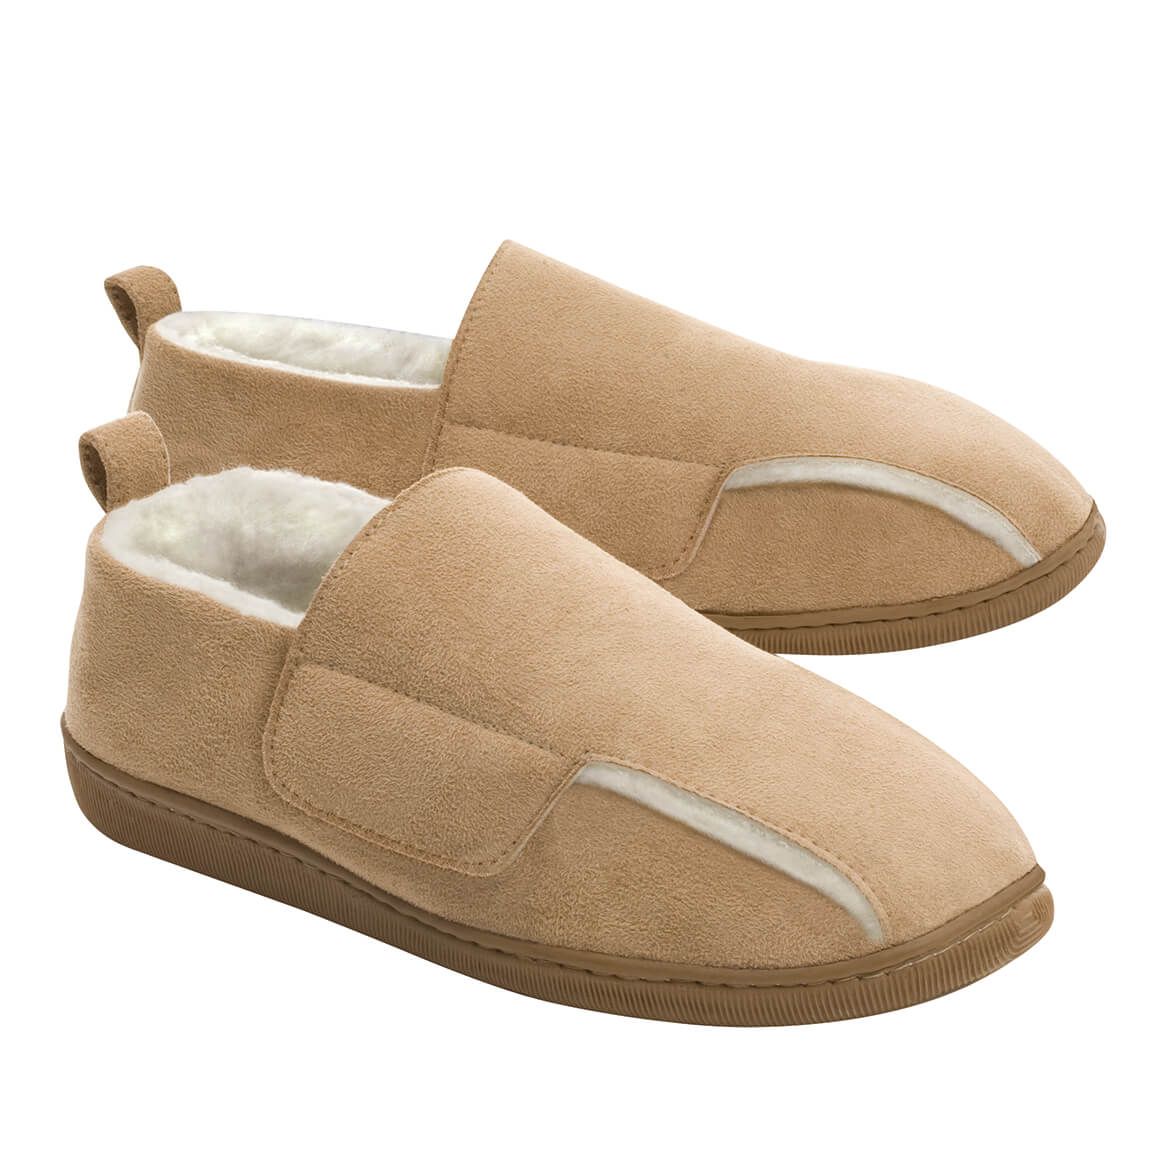 Adjustable Swollen Feet Loafers Mens + '-' + 369908